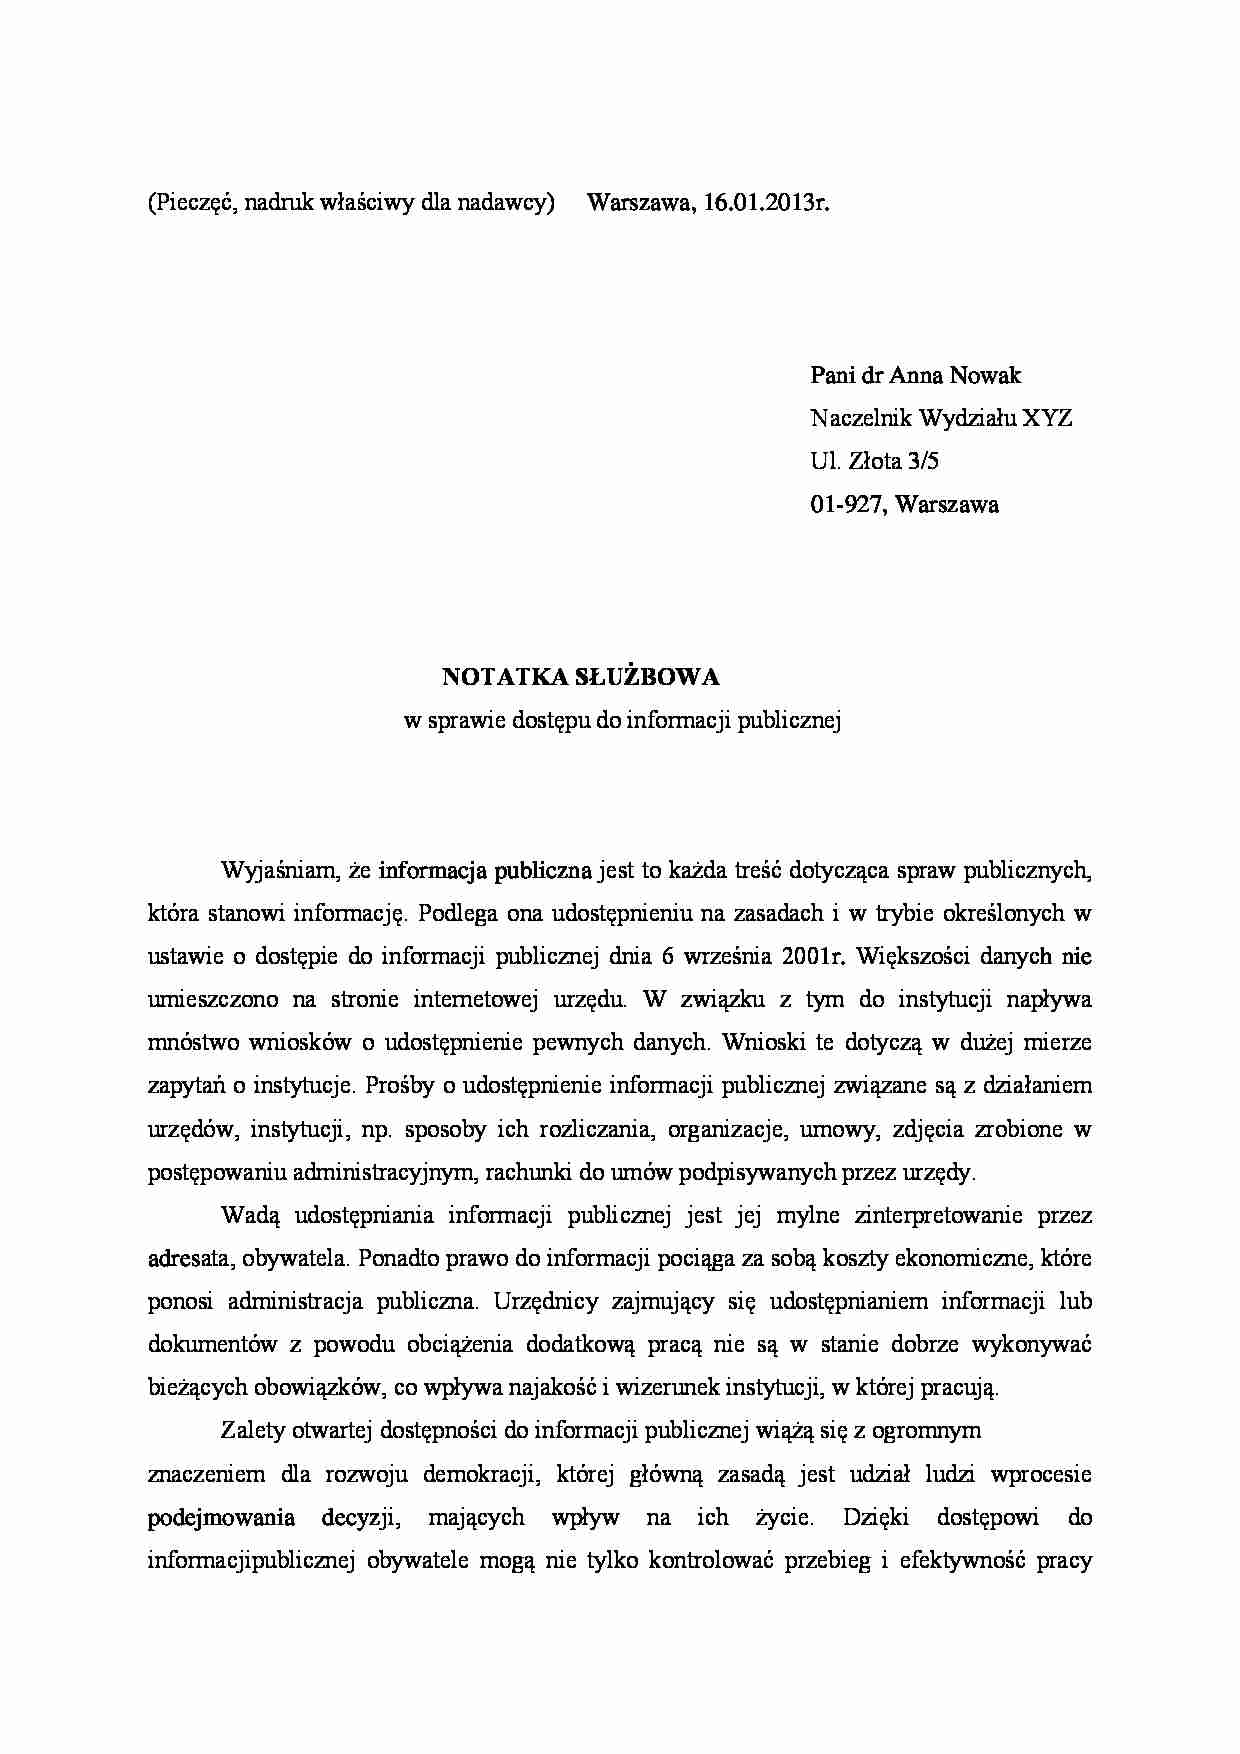 Jak Napisac Notatke Sluzbowa Na Pracownika Wzor Notatka służbowa - opracowanie - Notatek.pl